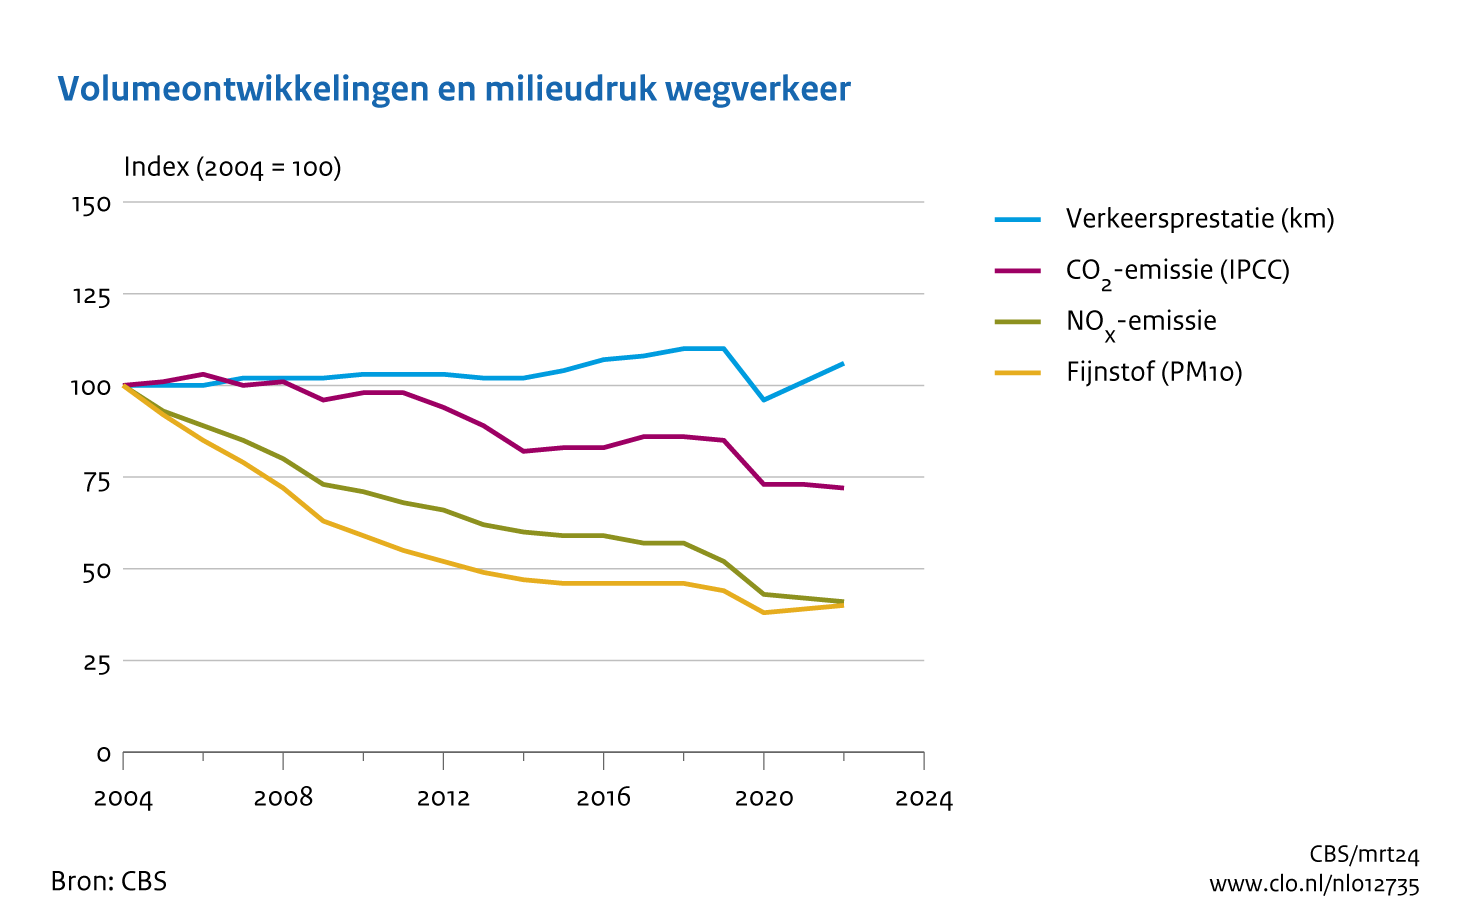 In 2022 is er 6 procent meer wegverkeer in Nederland dan in 2004. Ondanks deze toename van verreden voertuigkilometers is de emissie van koolstofdioxide door wegverkeer 28 procent lager dan in 2004 en is de uitstoot van stikstofoxiden en fijnstof (PM10) meer dan gehalveerd, namelijk met 59 en 60 procent.